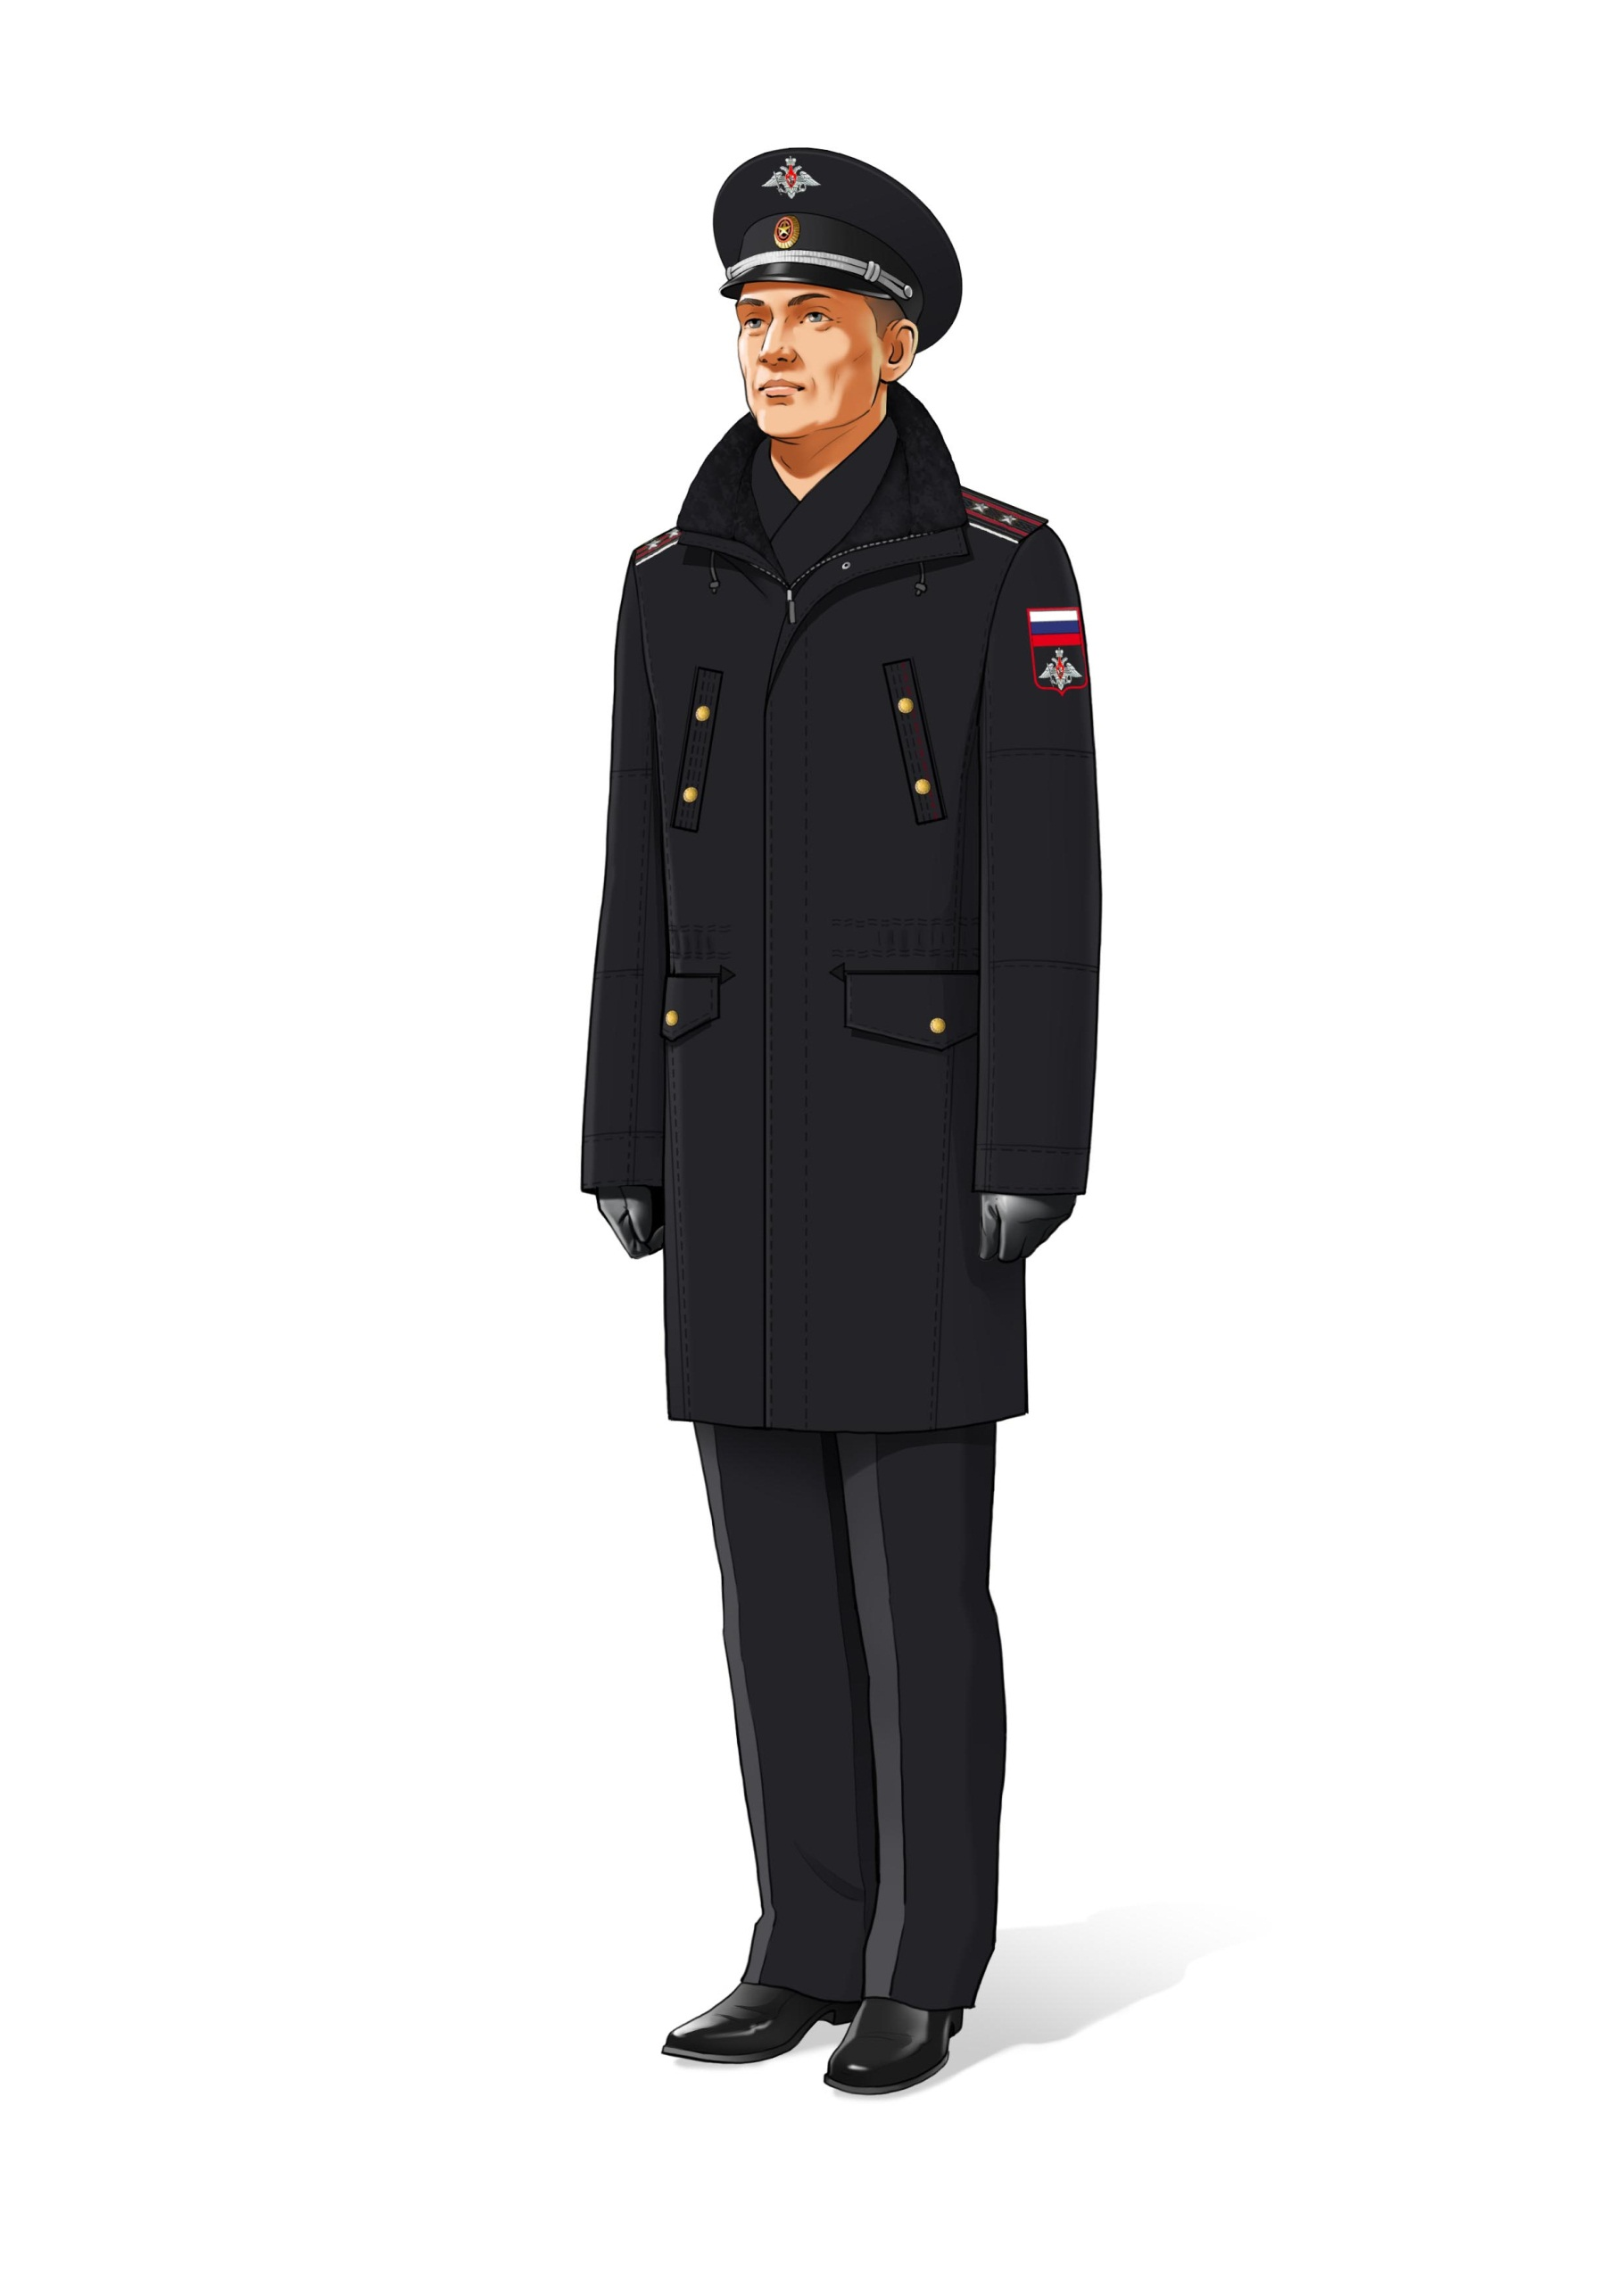 Зимняя форма одежды для офицеров ВМФ РФ